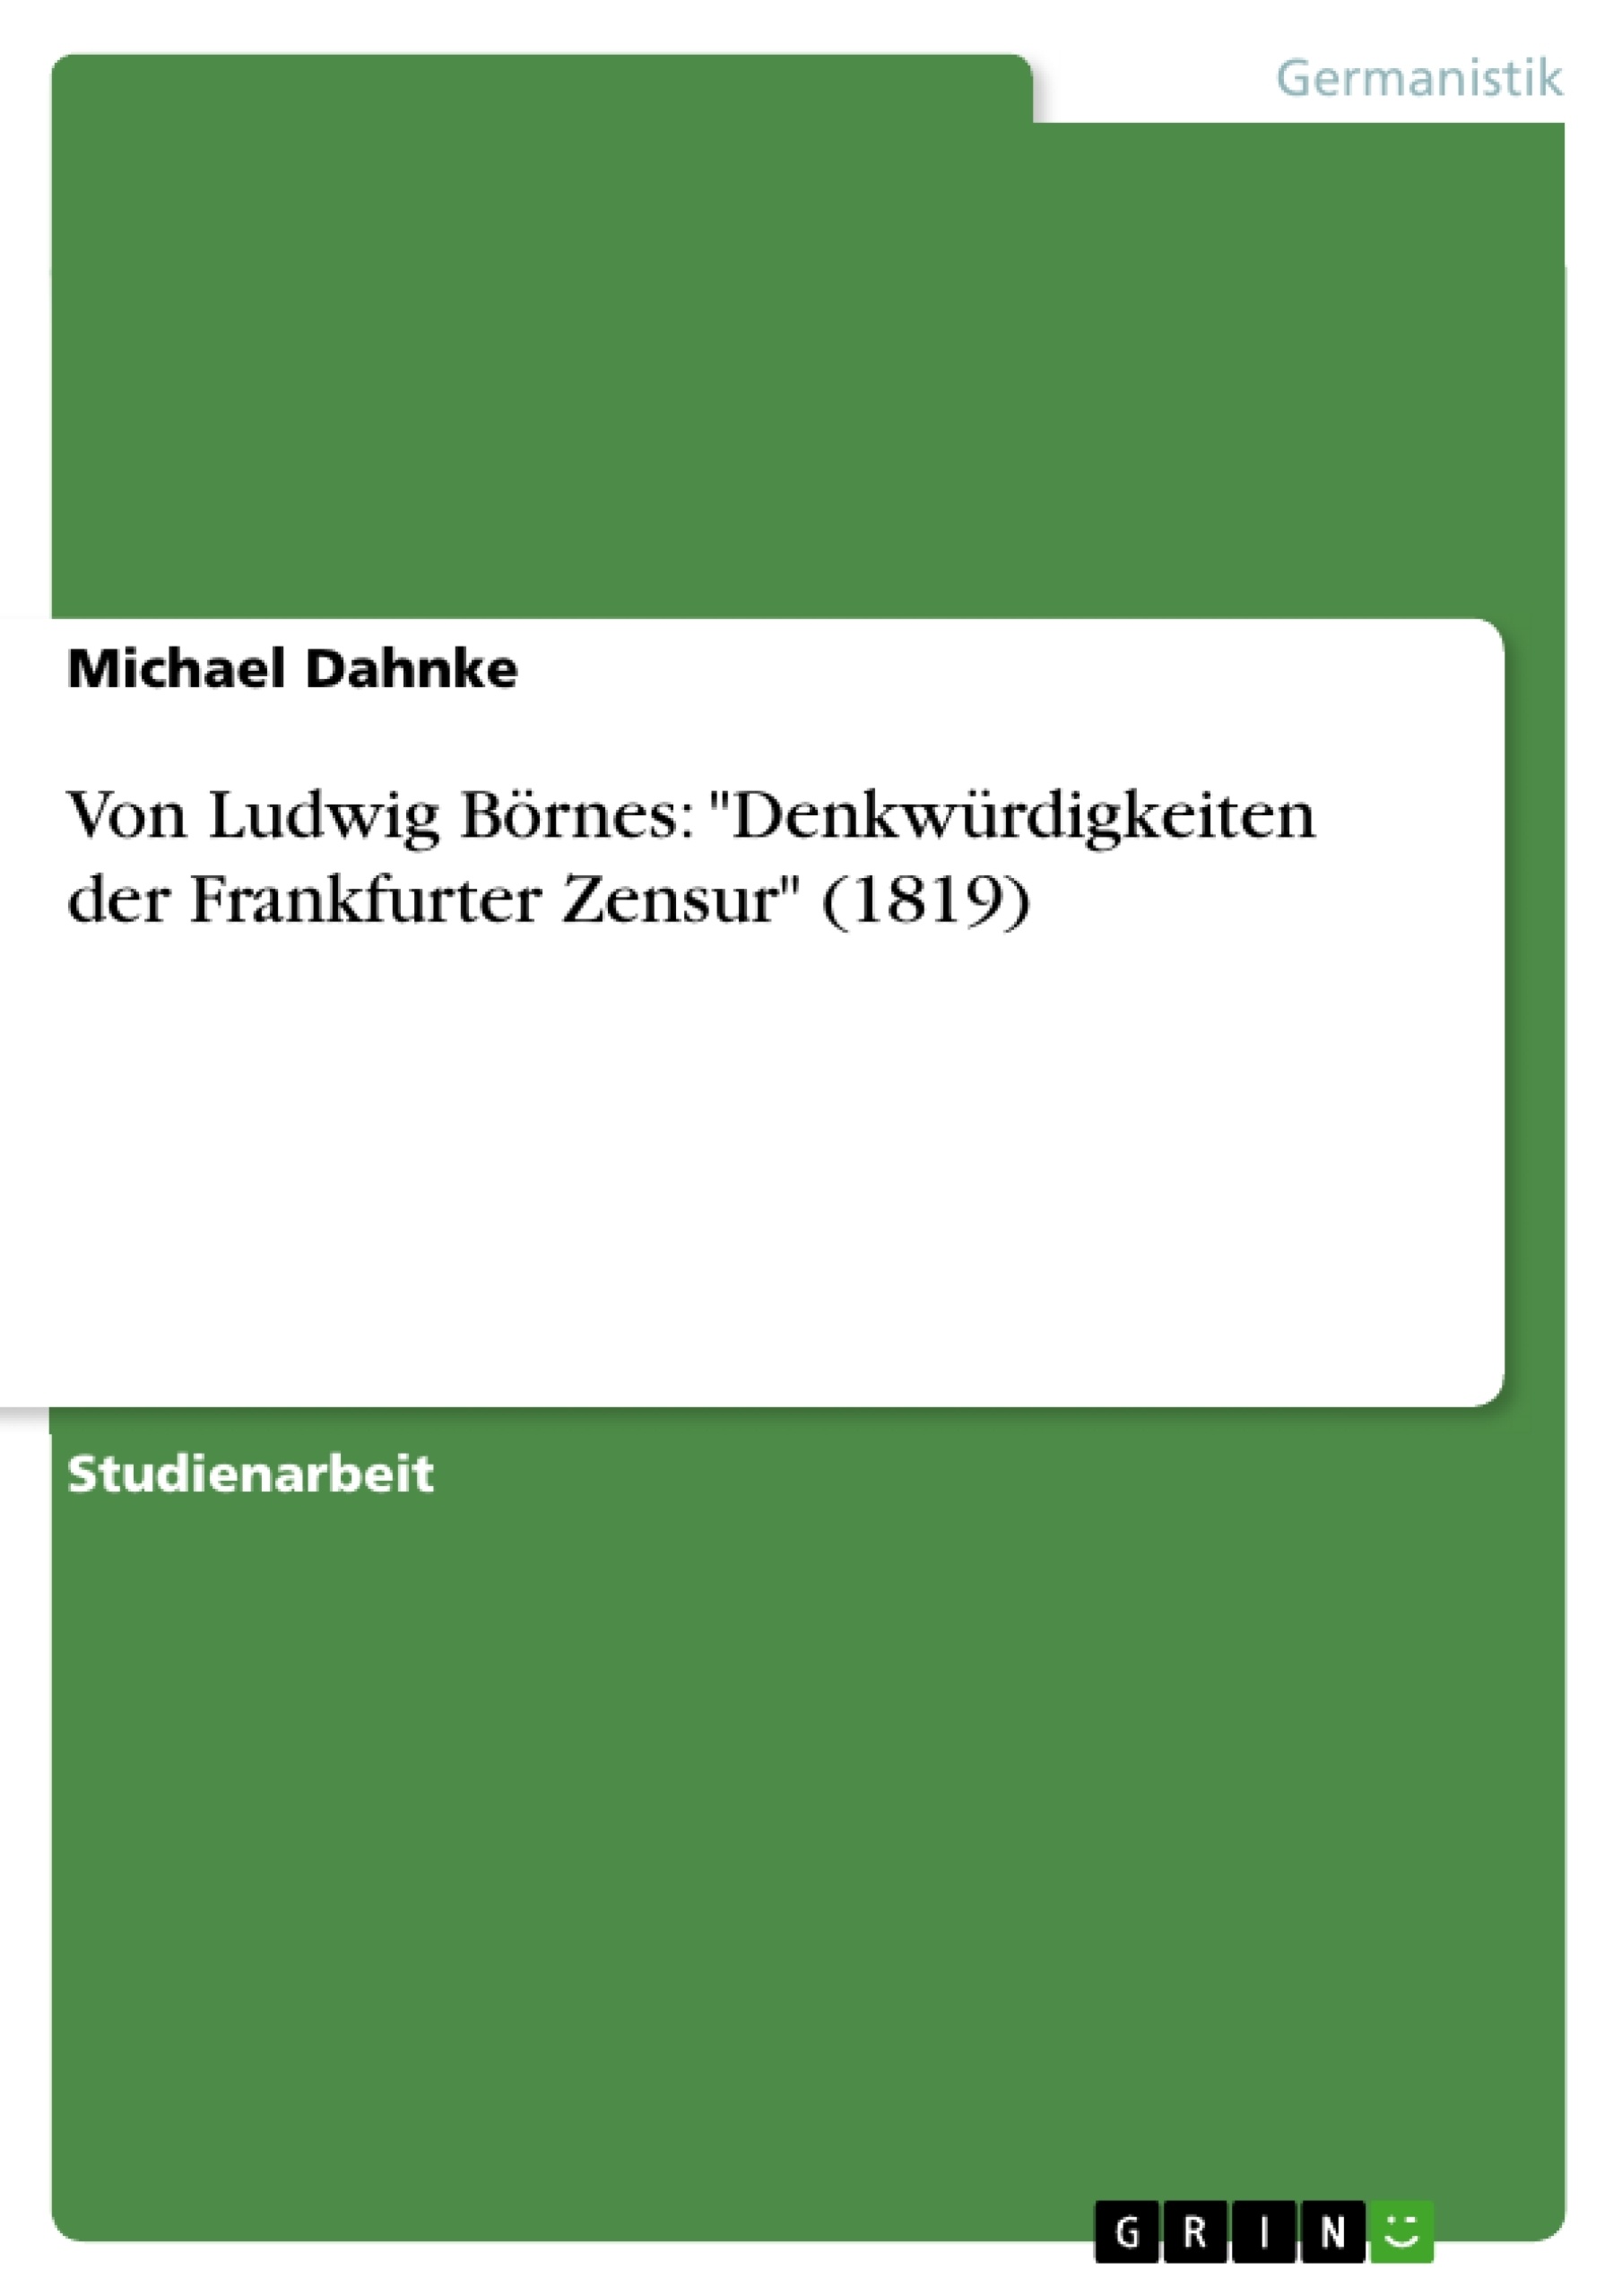 Title: Von Ludwig Börnes: "Denkwürdigkeiten der Frankfurter Zensur" (1819)